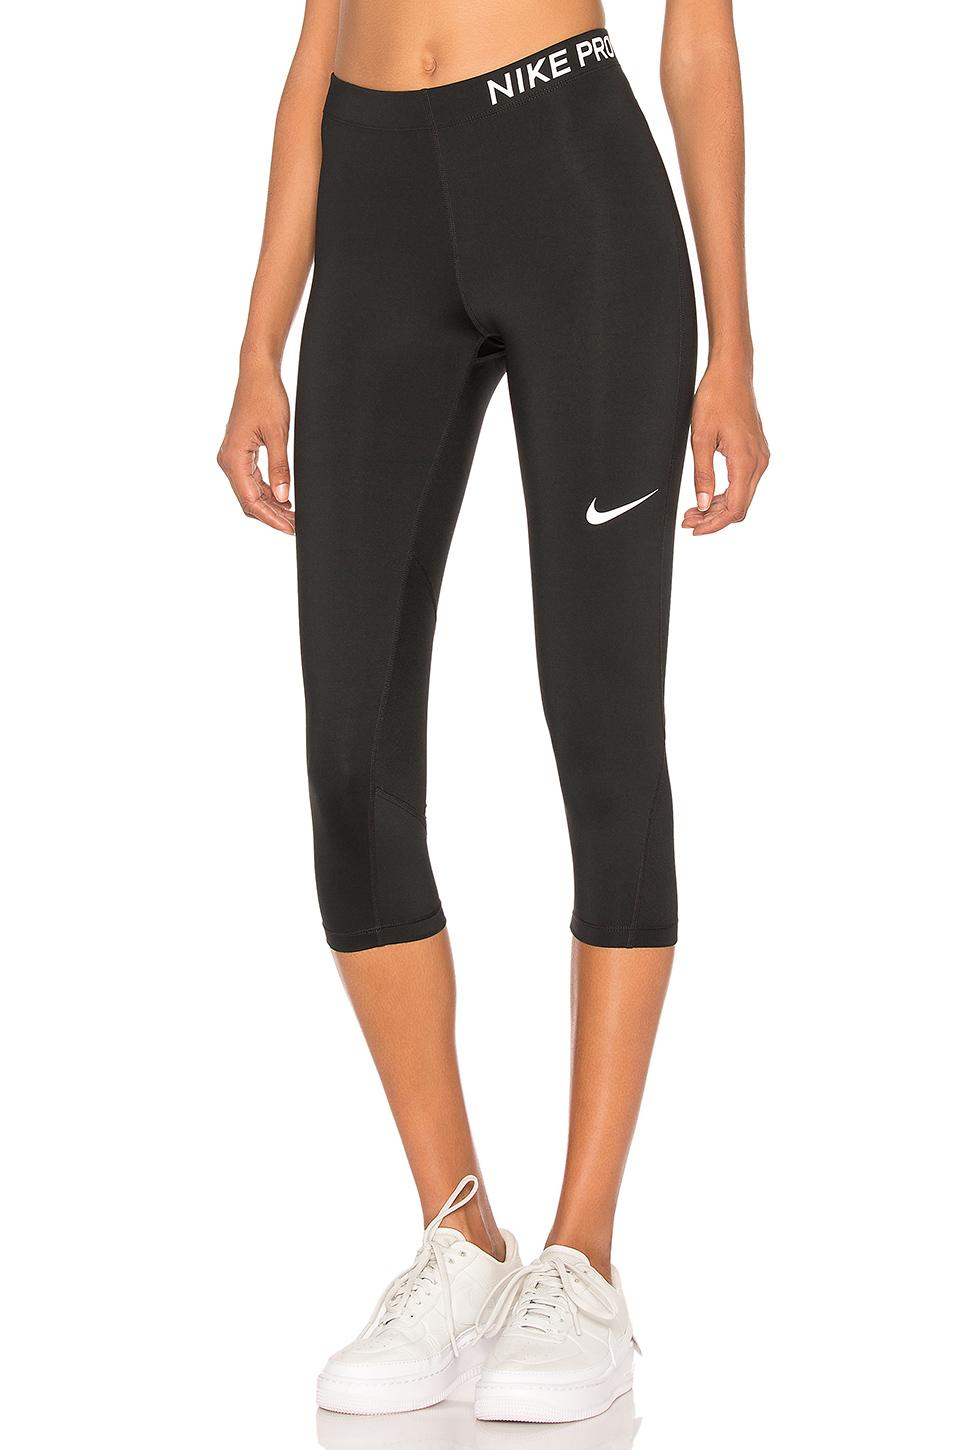 Nike Synthetic Pro Dri-fit Capri Training Leggings in Black & White ...